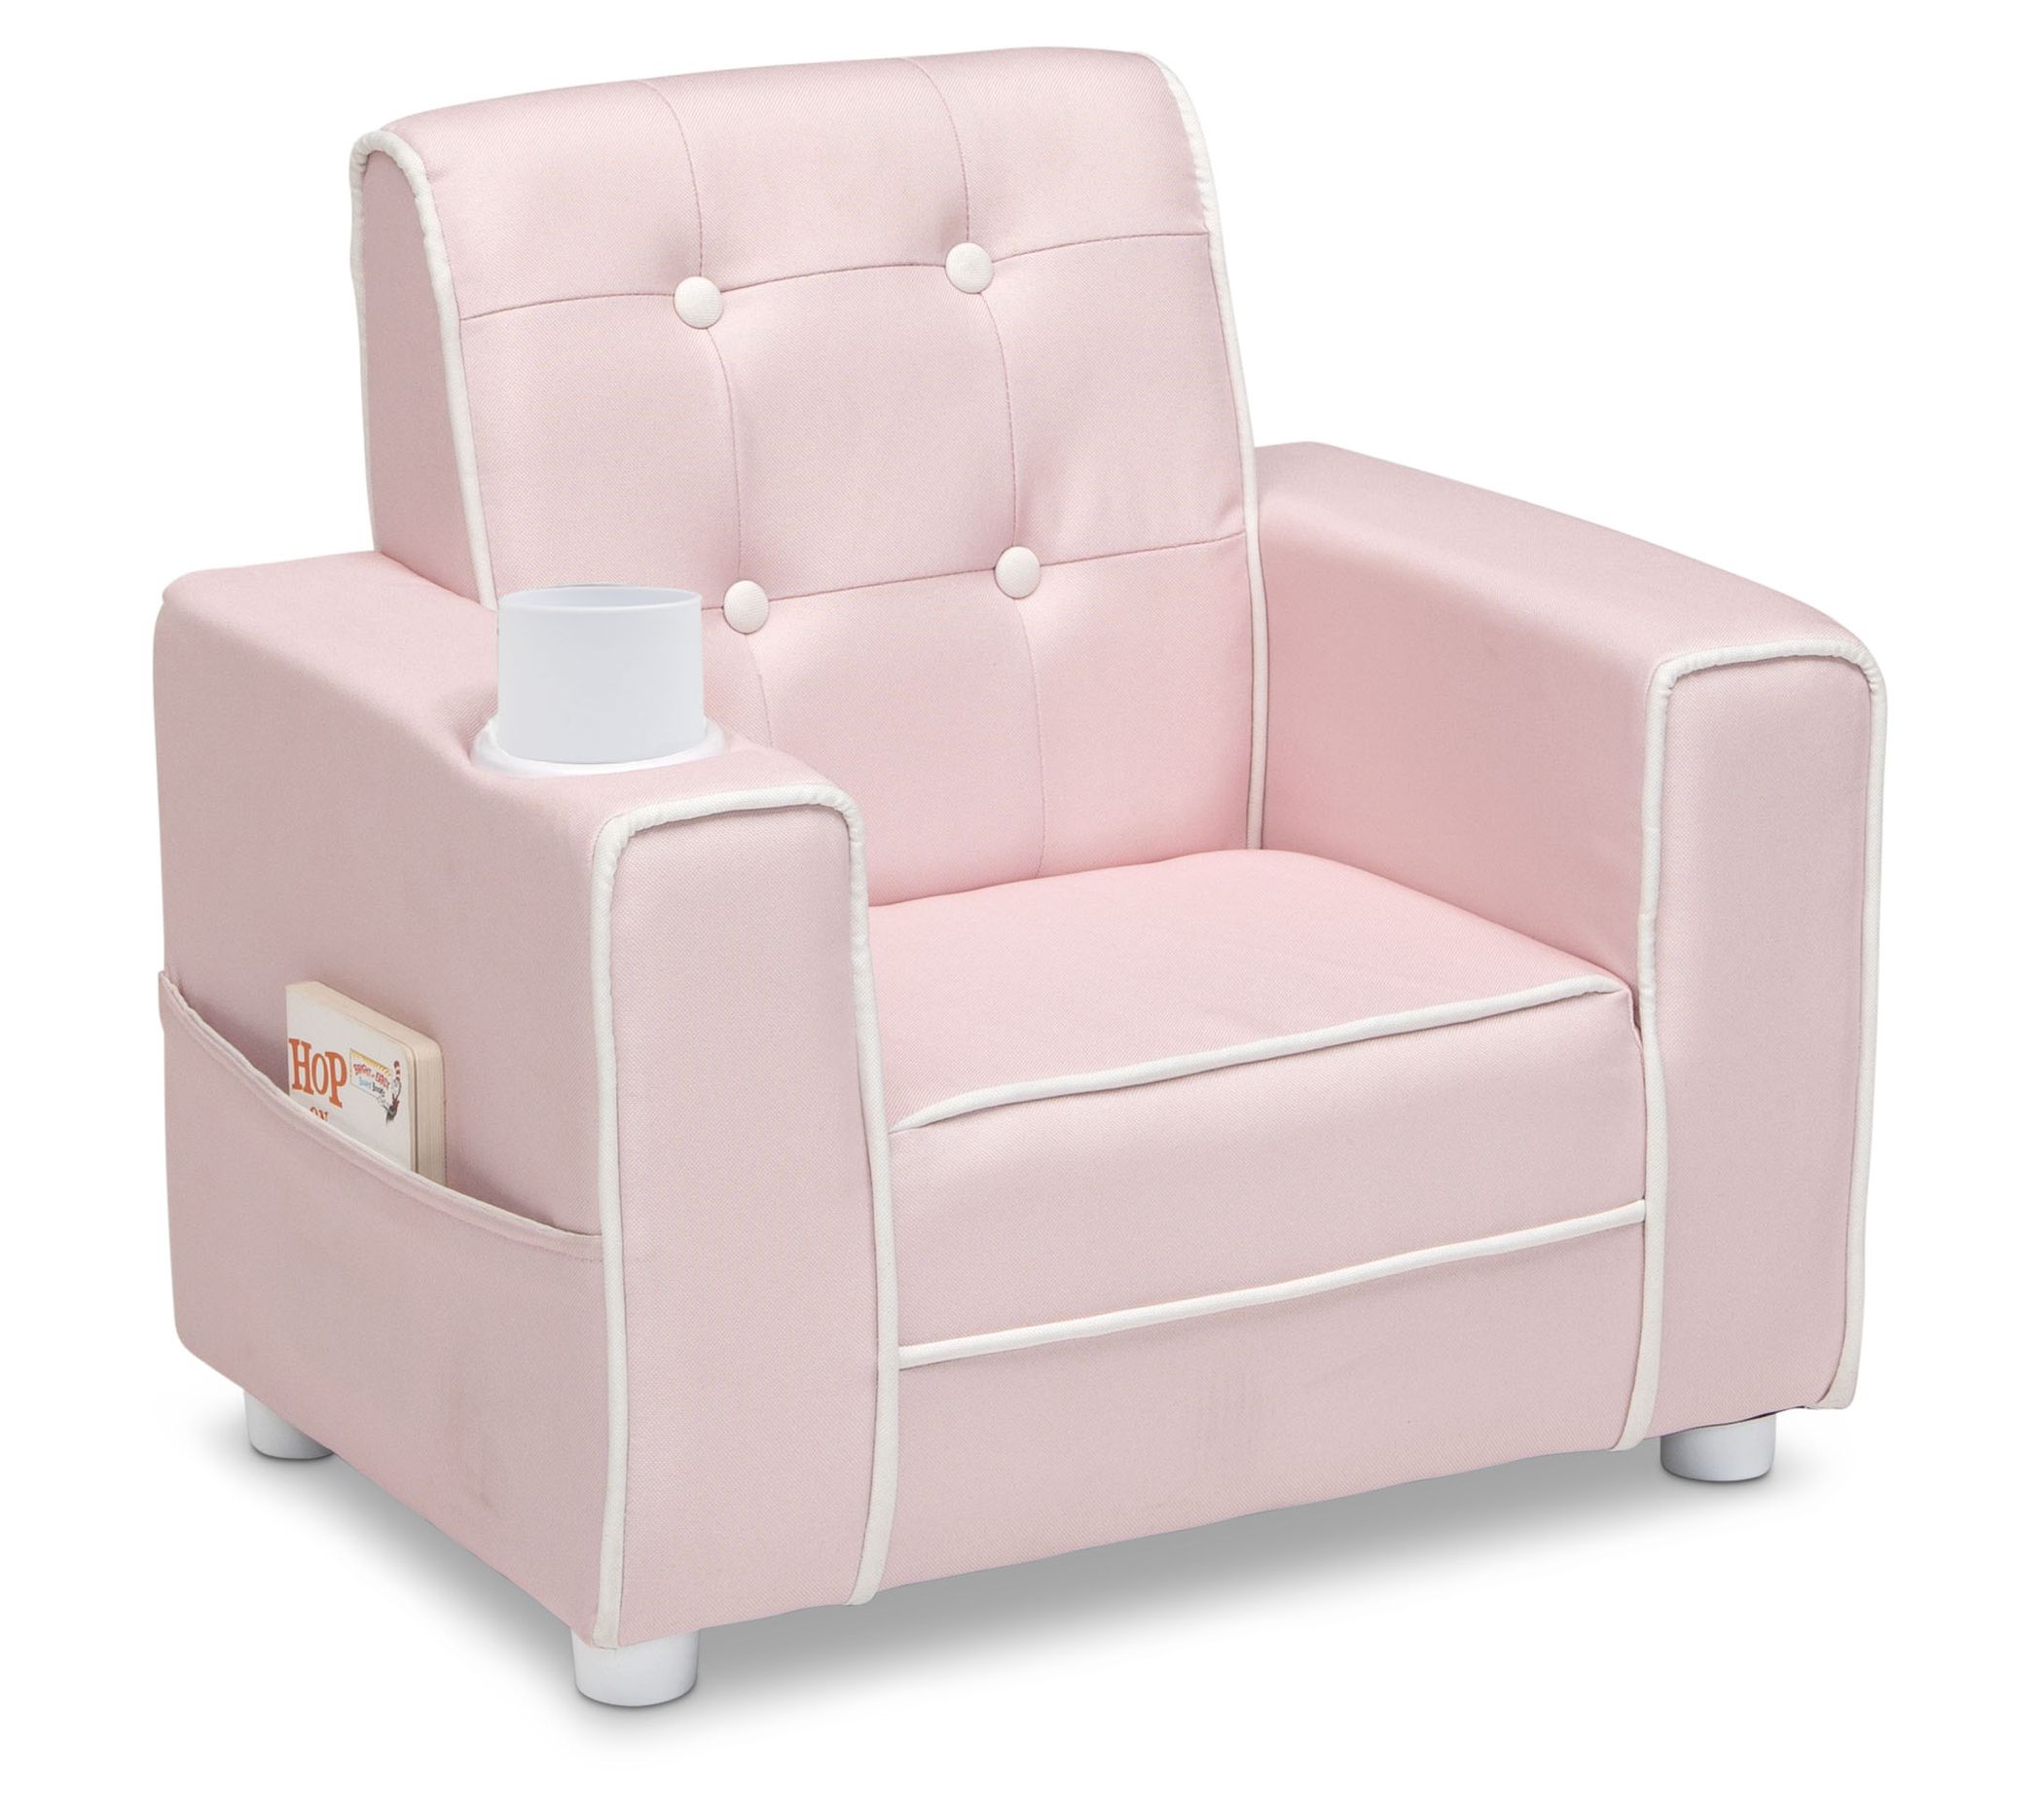 44 X 44 X 4 Papasan Outdoor Chair Cushion Blush Pink - Sorra Home :  Target